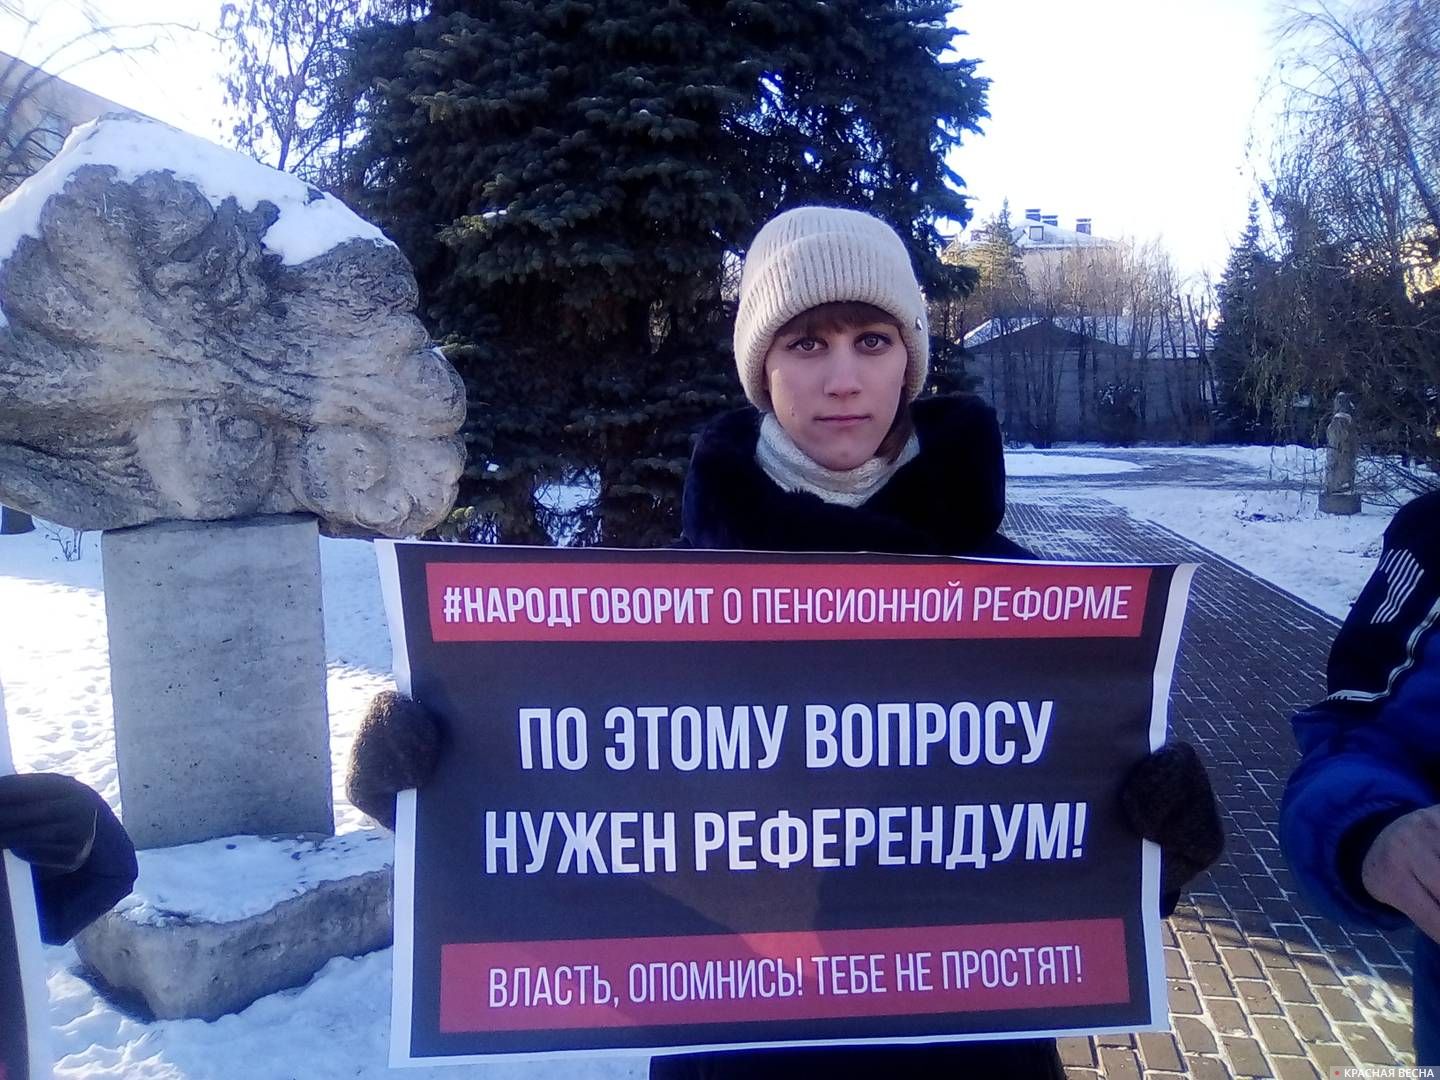  Ульяновск. Пикет против пенсионной реформы 01.12.2018